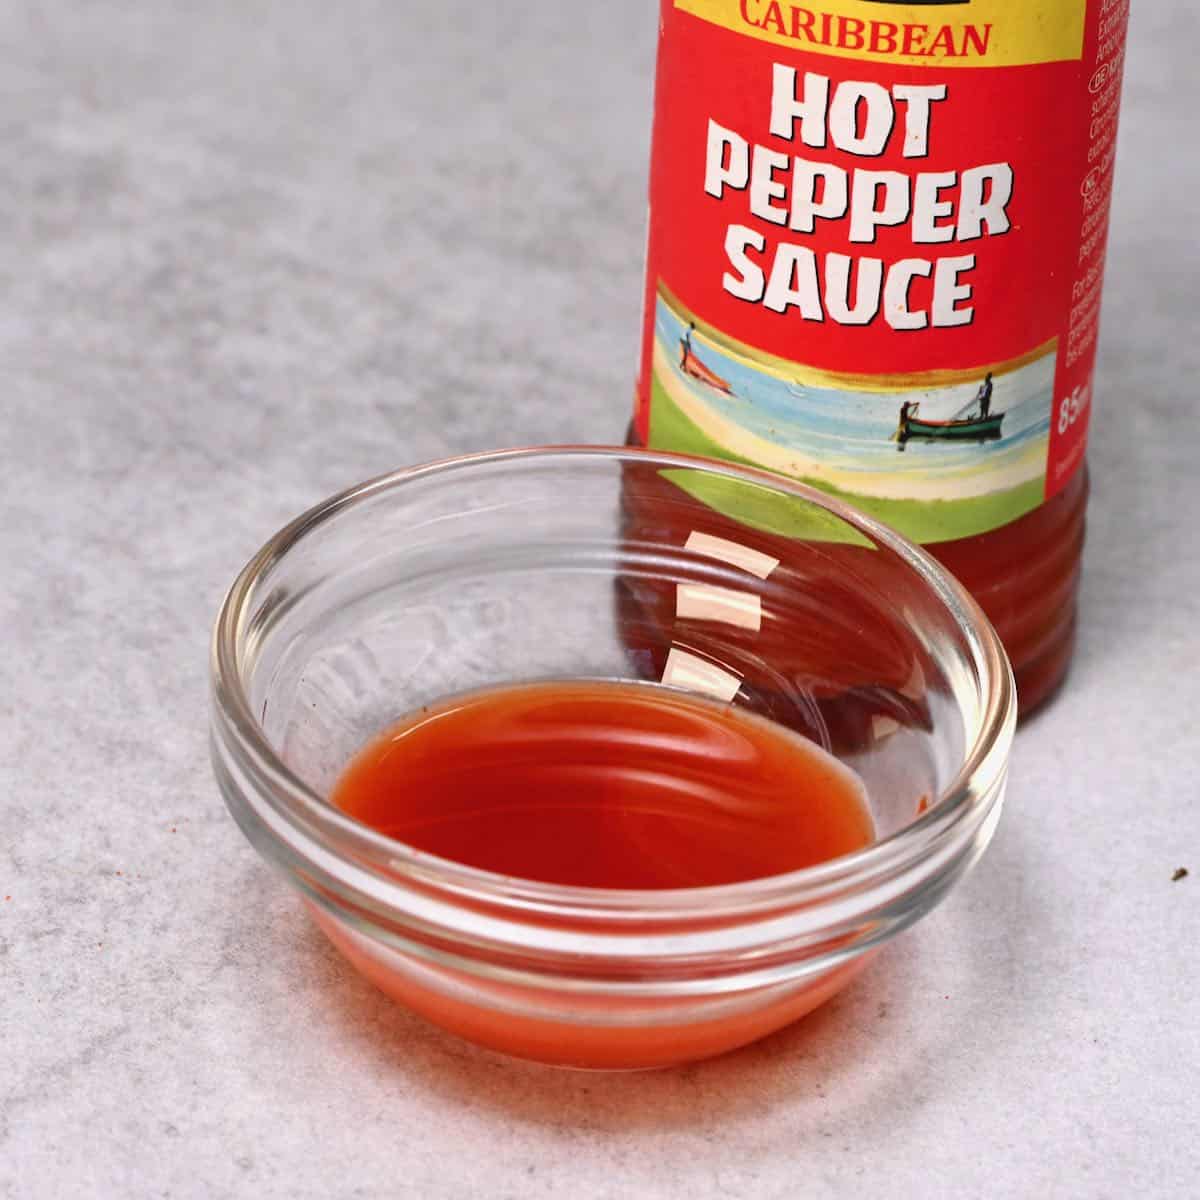 hot pepper sauce inside a small glass bowl